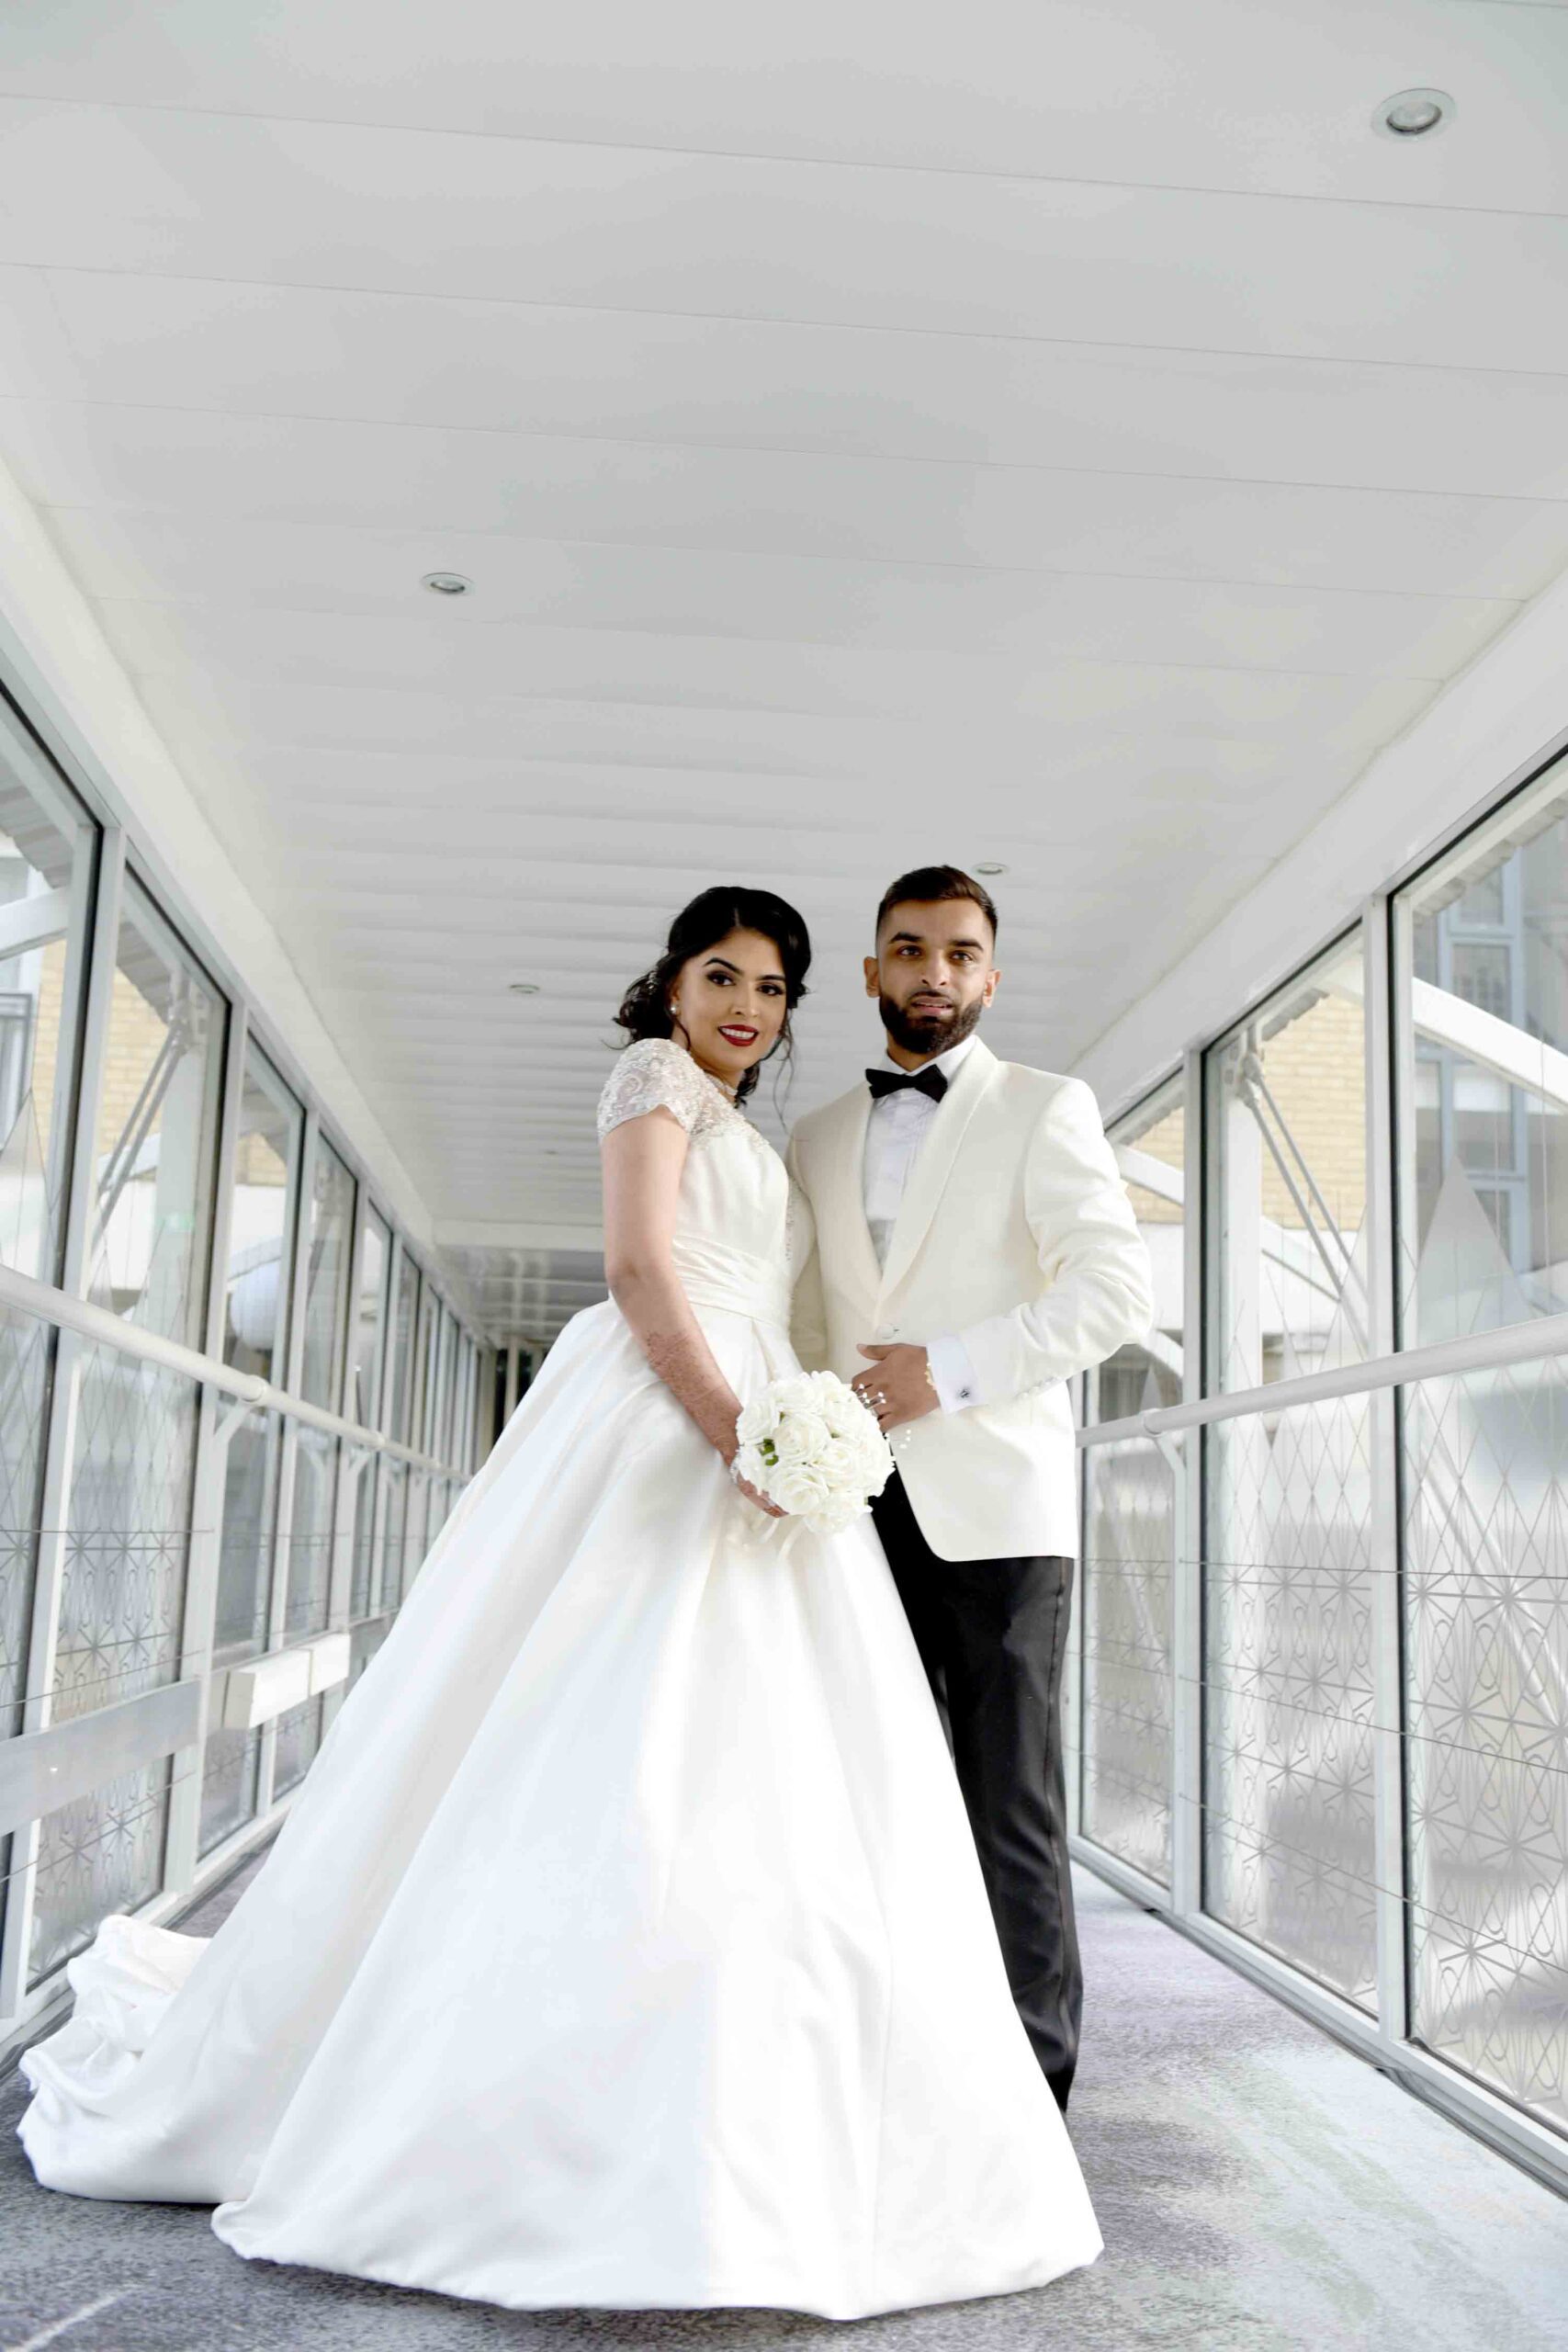 Arabic wedding